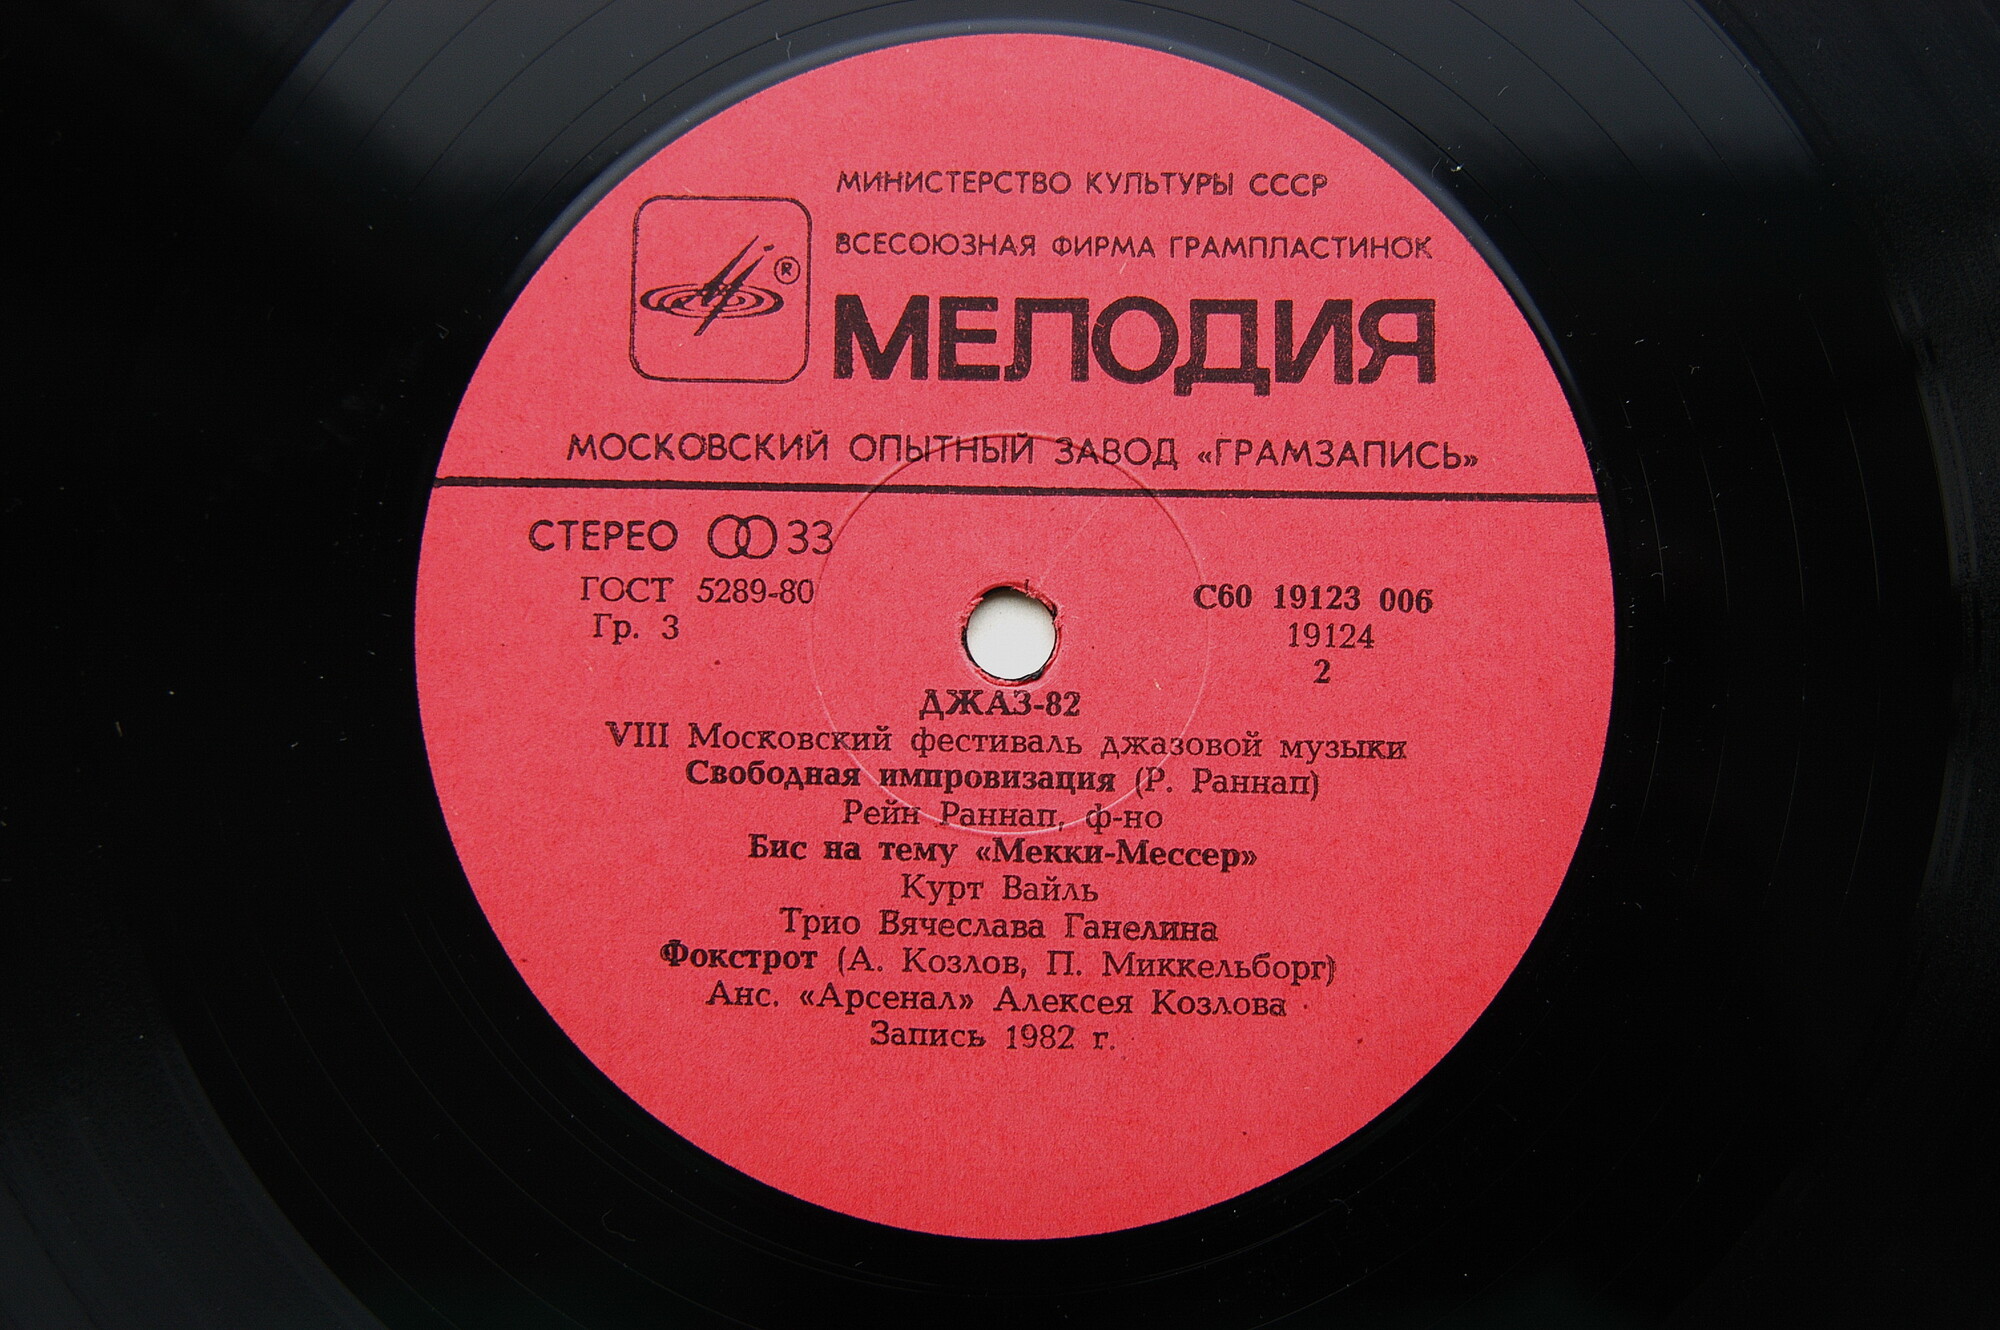 «ДЖАЗ-82» Седьмой Московский фестиваль джазовой музыки (выпуск 2).